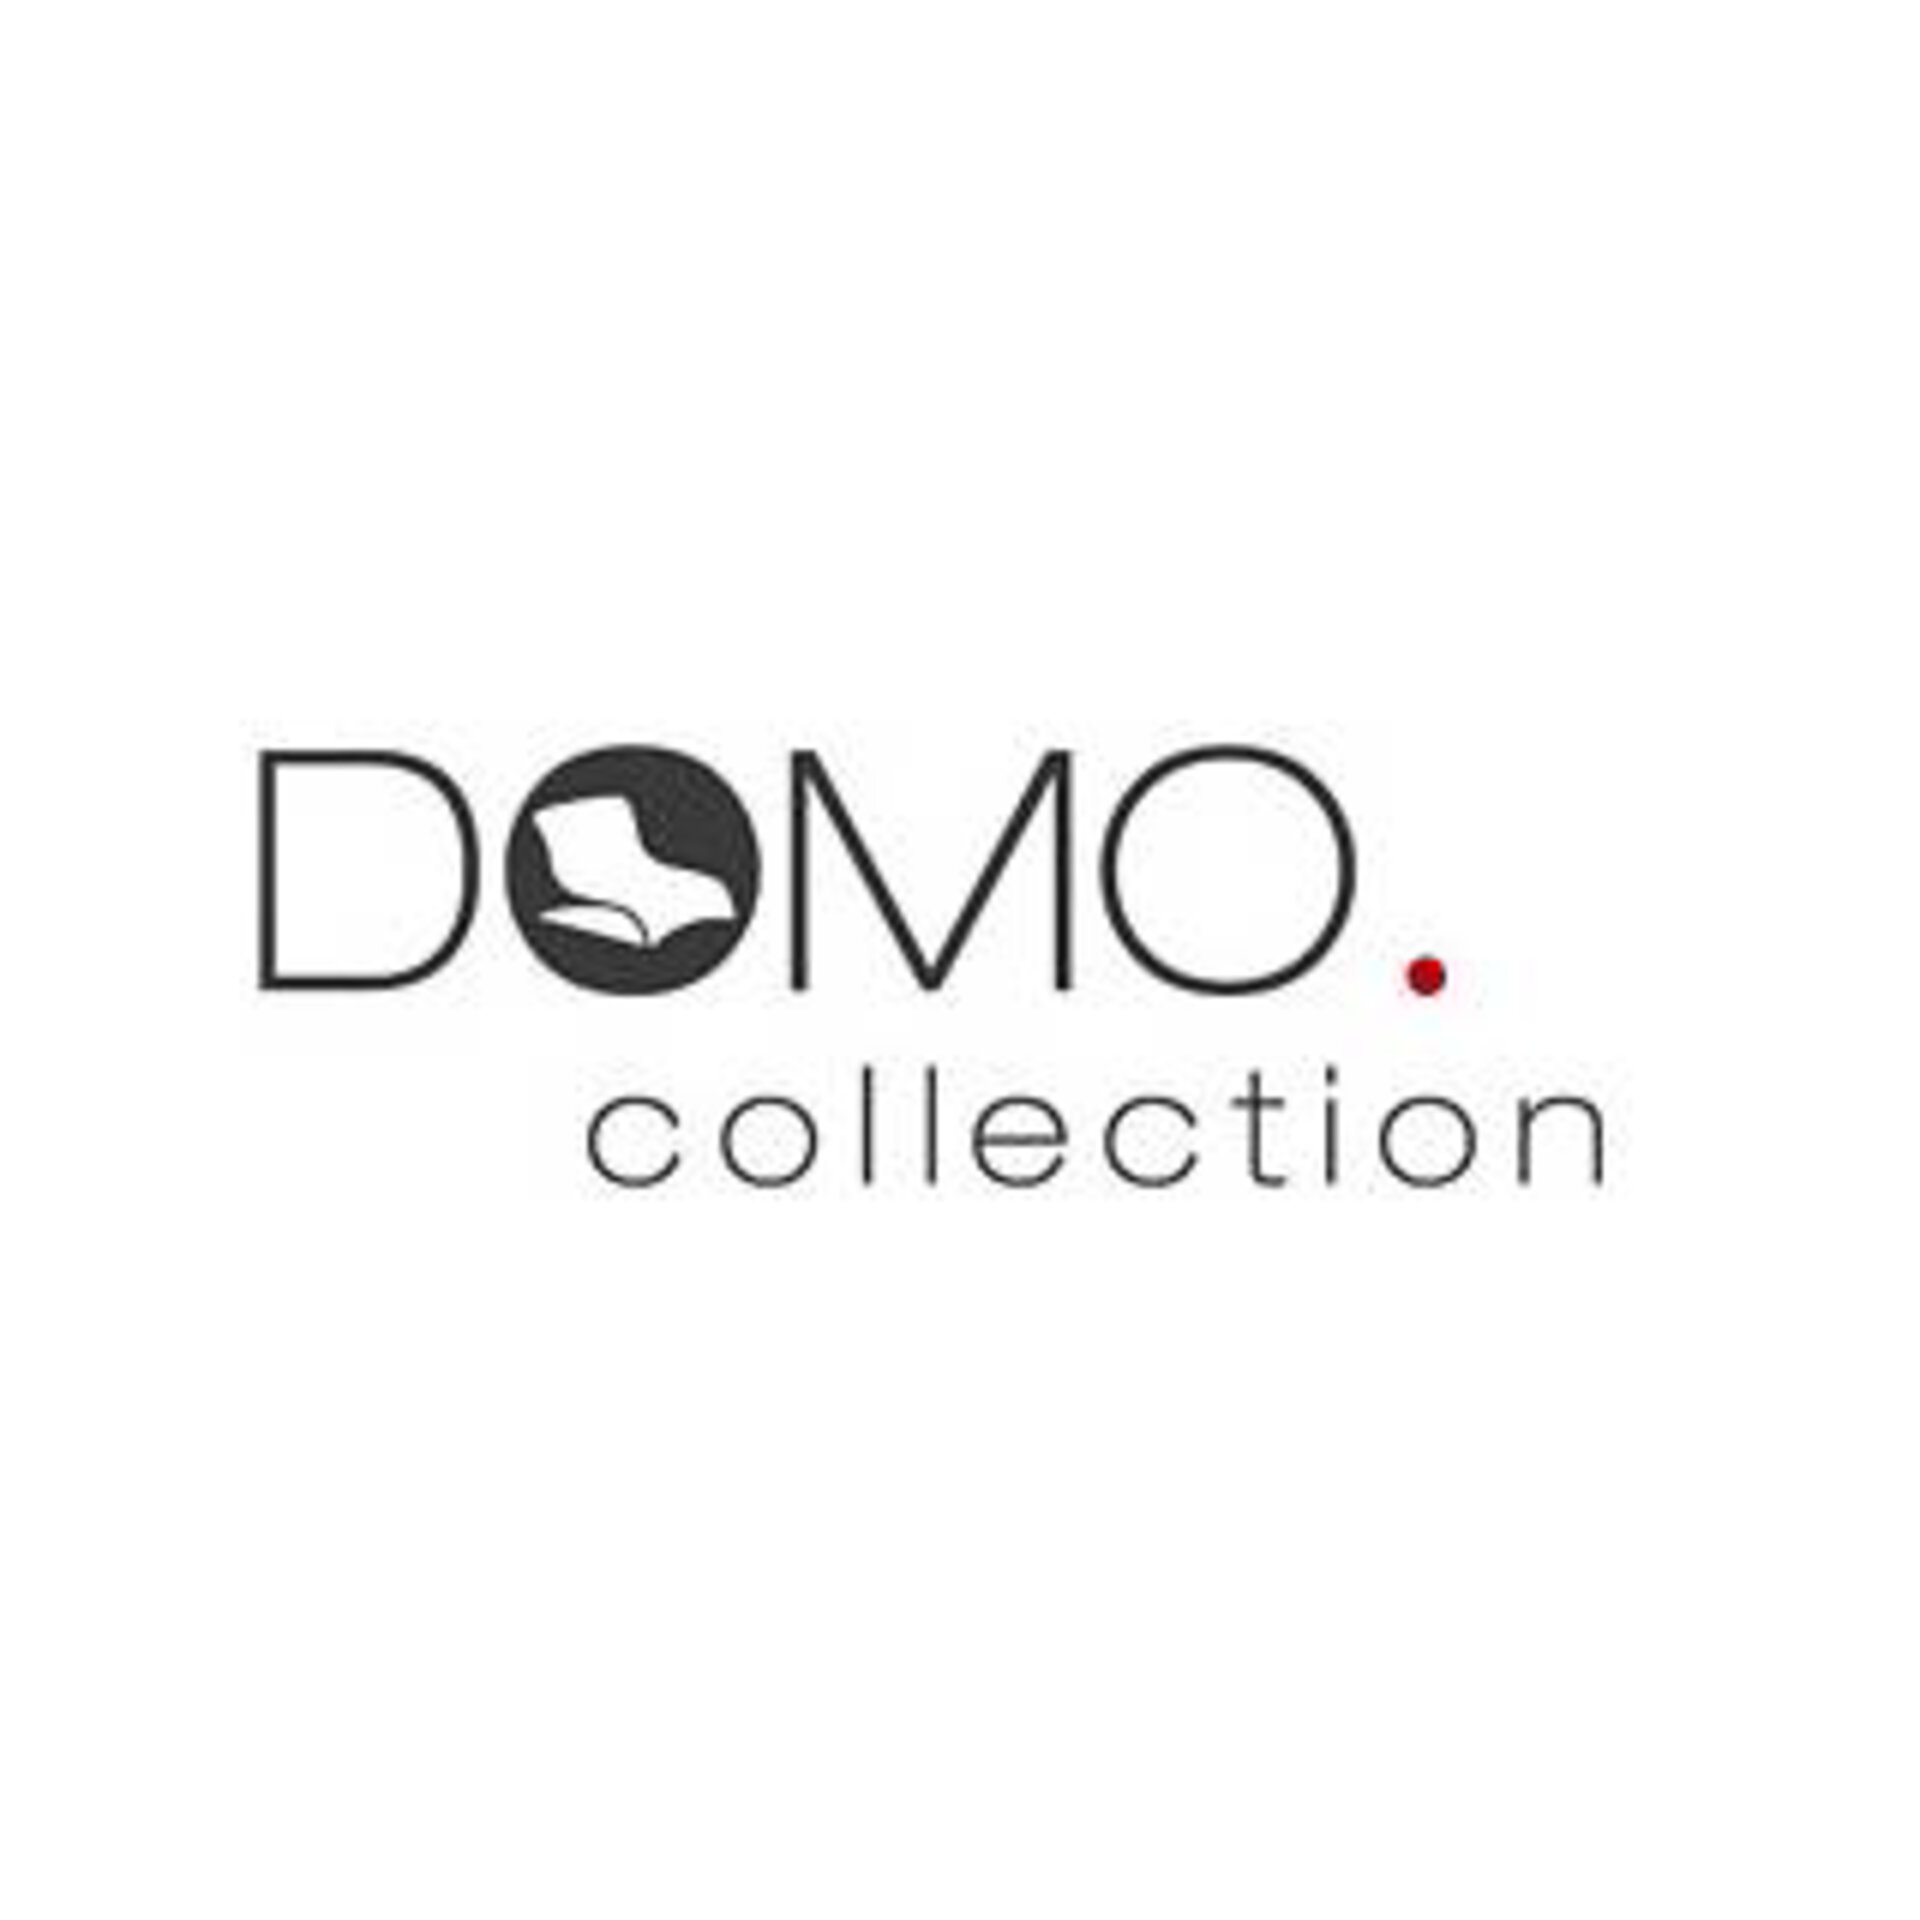 Domo Collection Polstermöbel, Sofa, Couch bei Möbel Inhofer